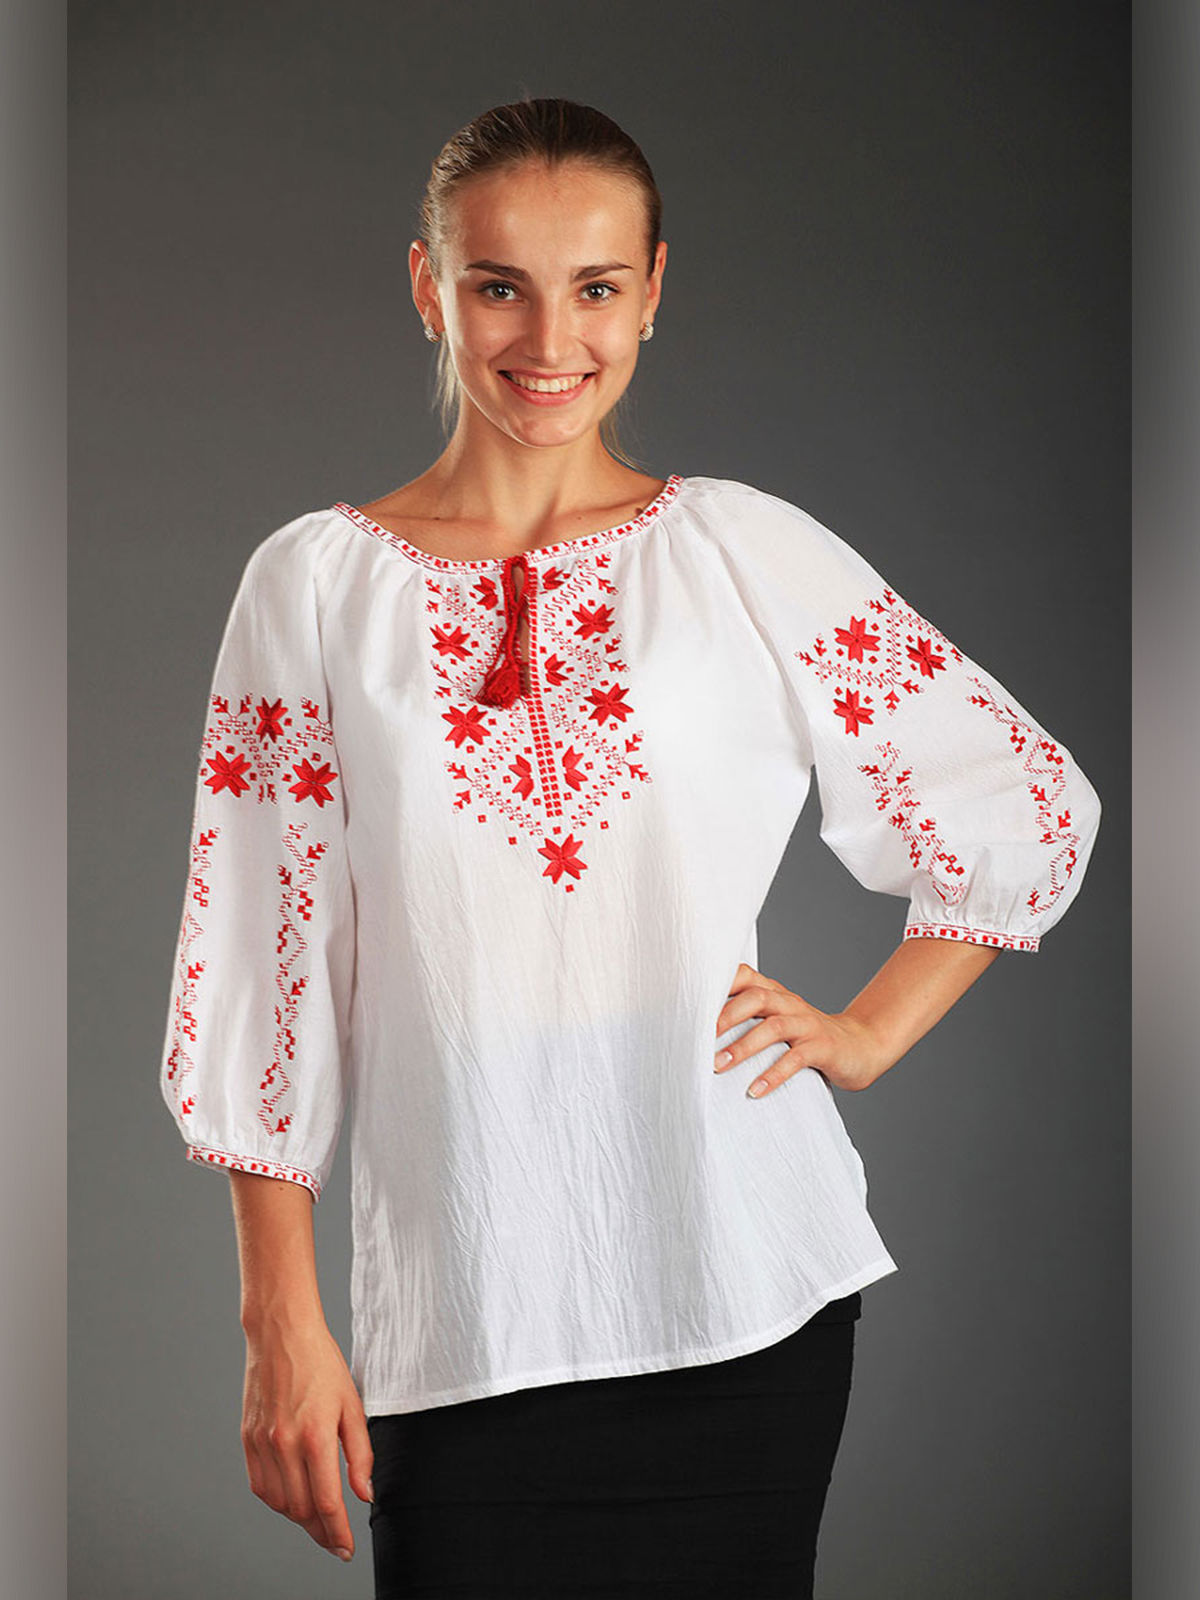 Русско народная блузка. Вышиванка Беларусь. Блущкав народном стиле. Блузы в народном стиле. Украинские рубахи вышиванки.